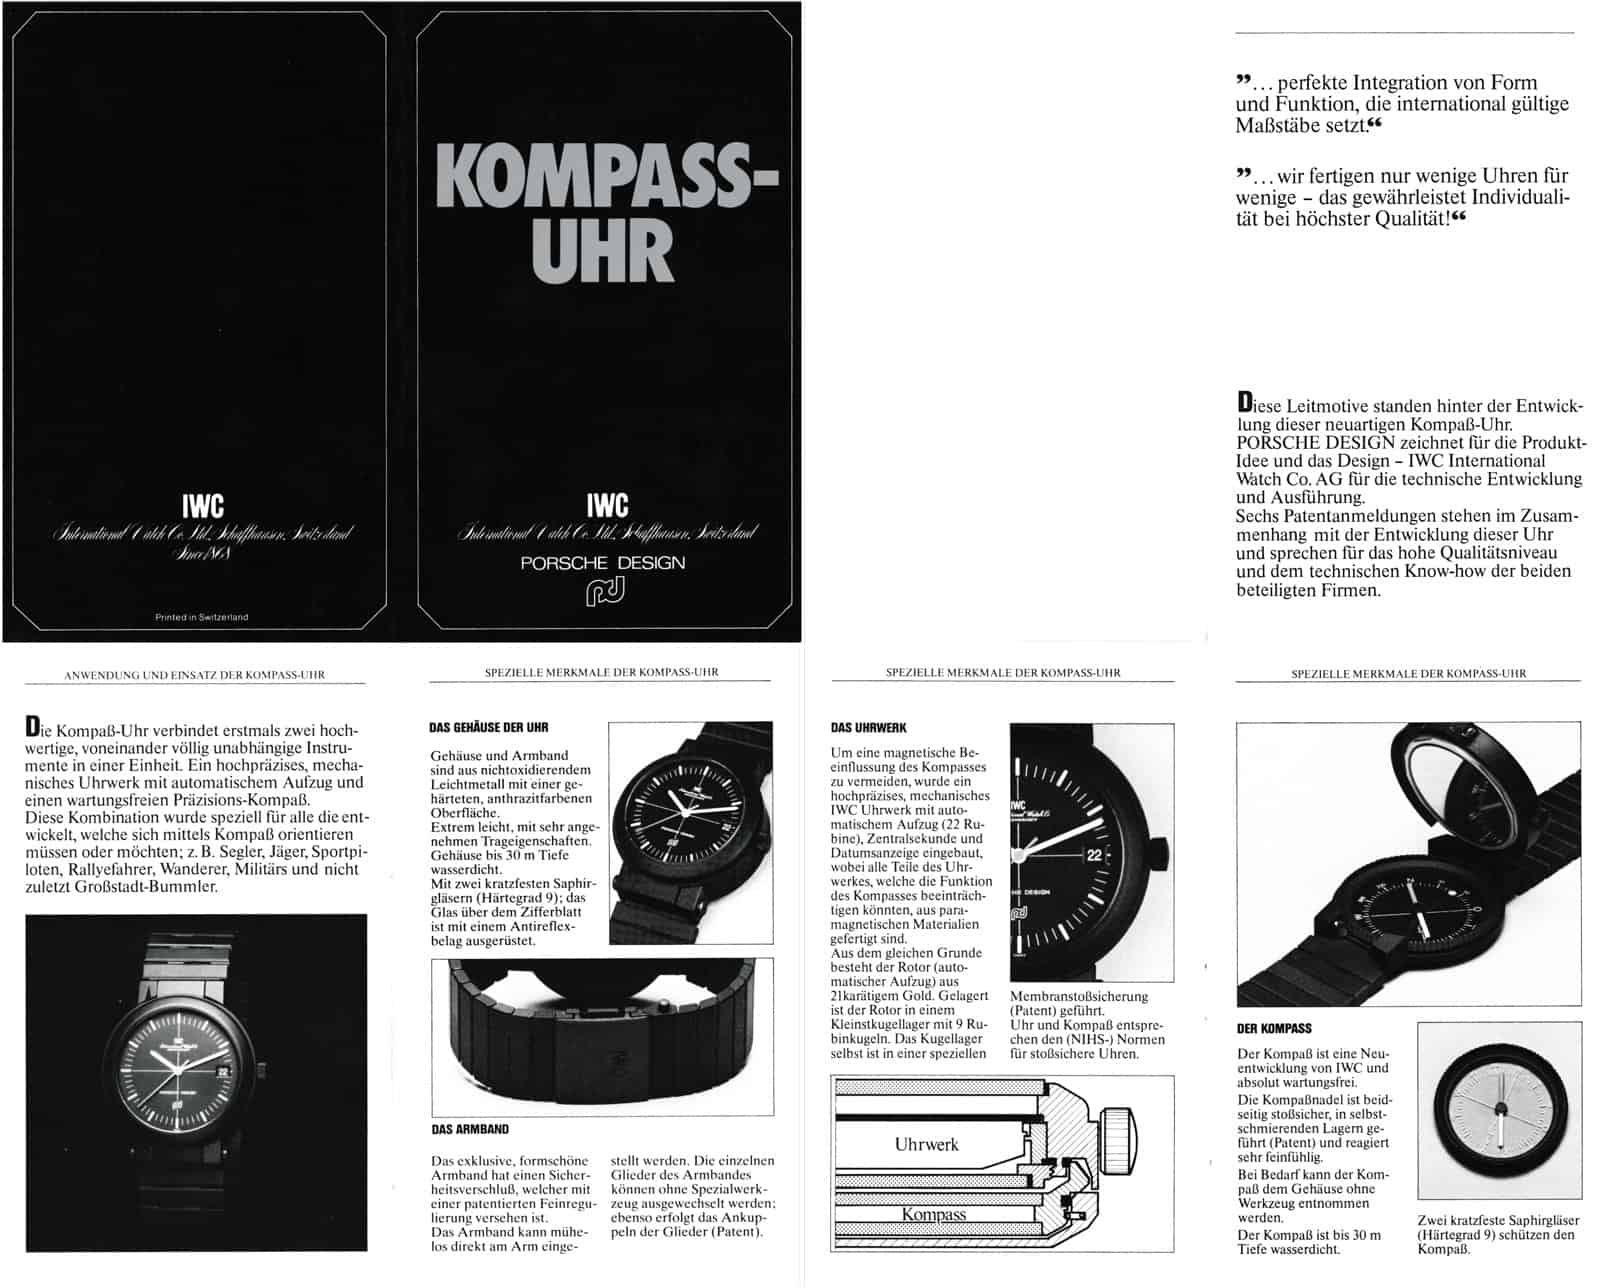 WC Porsche Design Kompassuhr Flyer 1979 1-4 (C) Uhrenkosmos